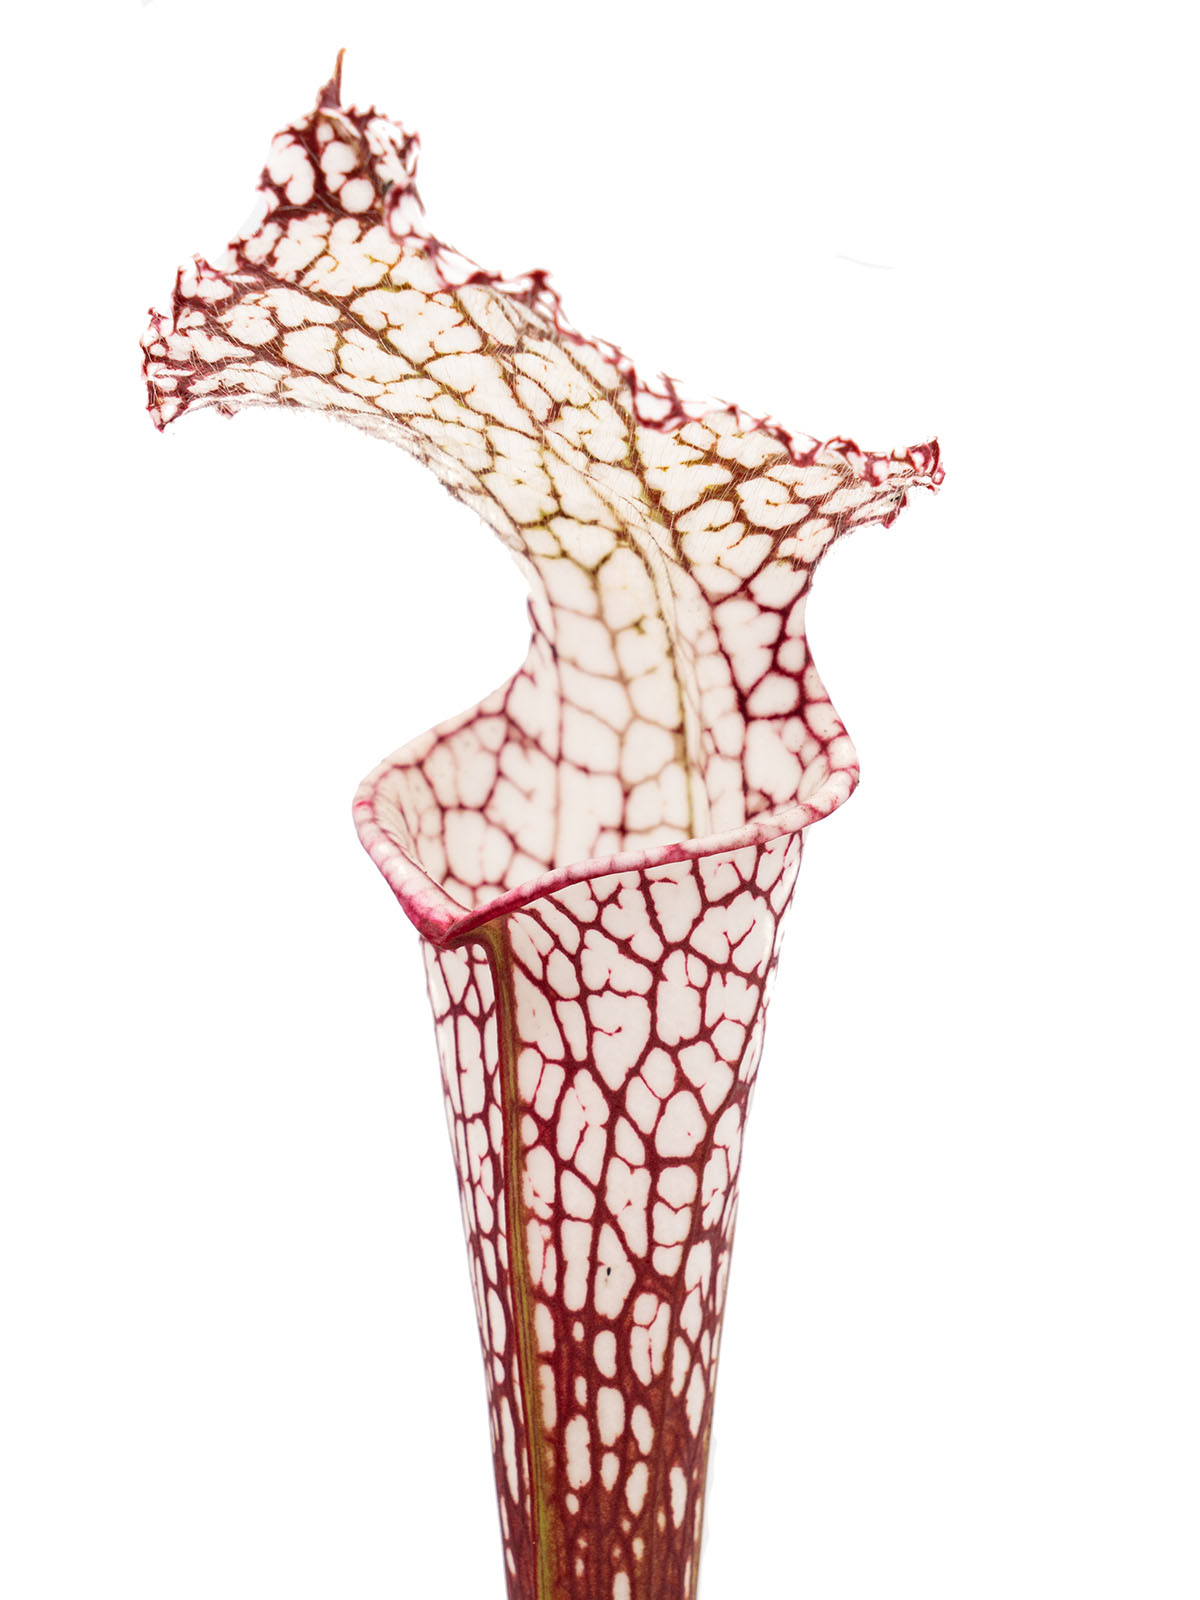 Sarracenia leucophylla - Christian Klein selection, Giant autumn pitchers